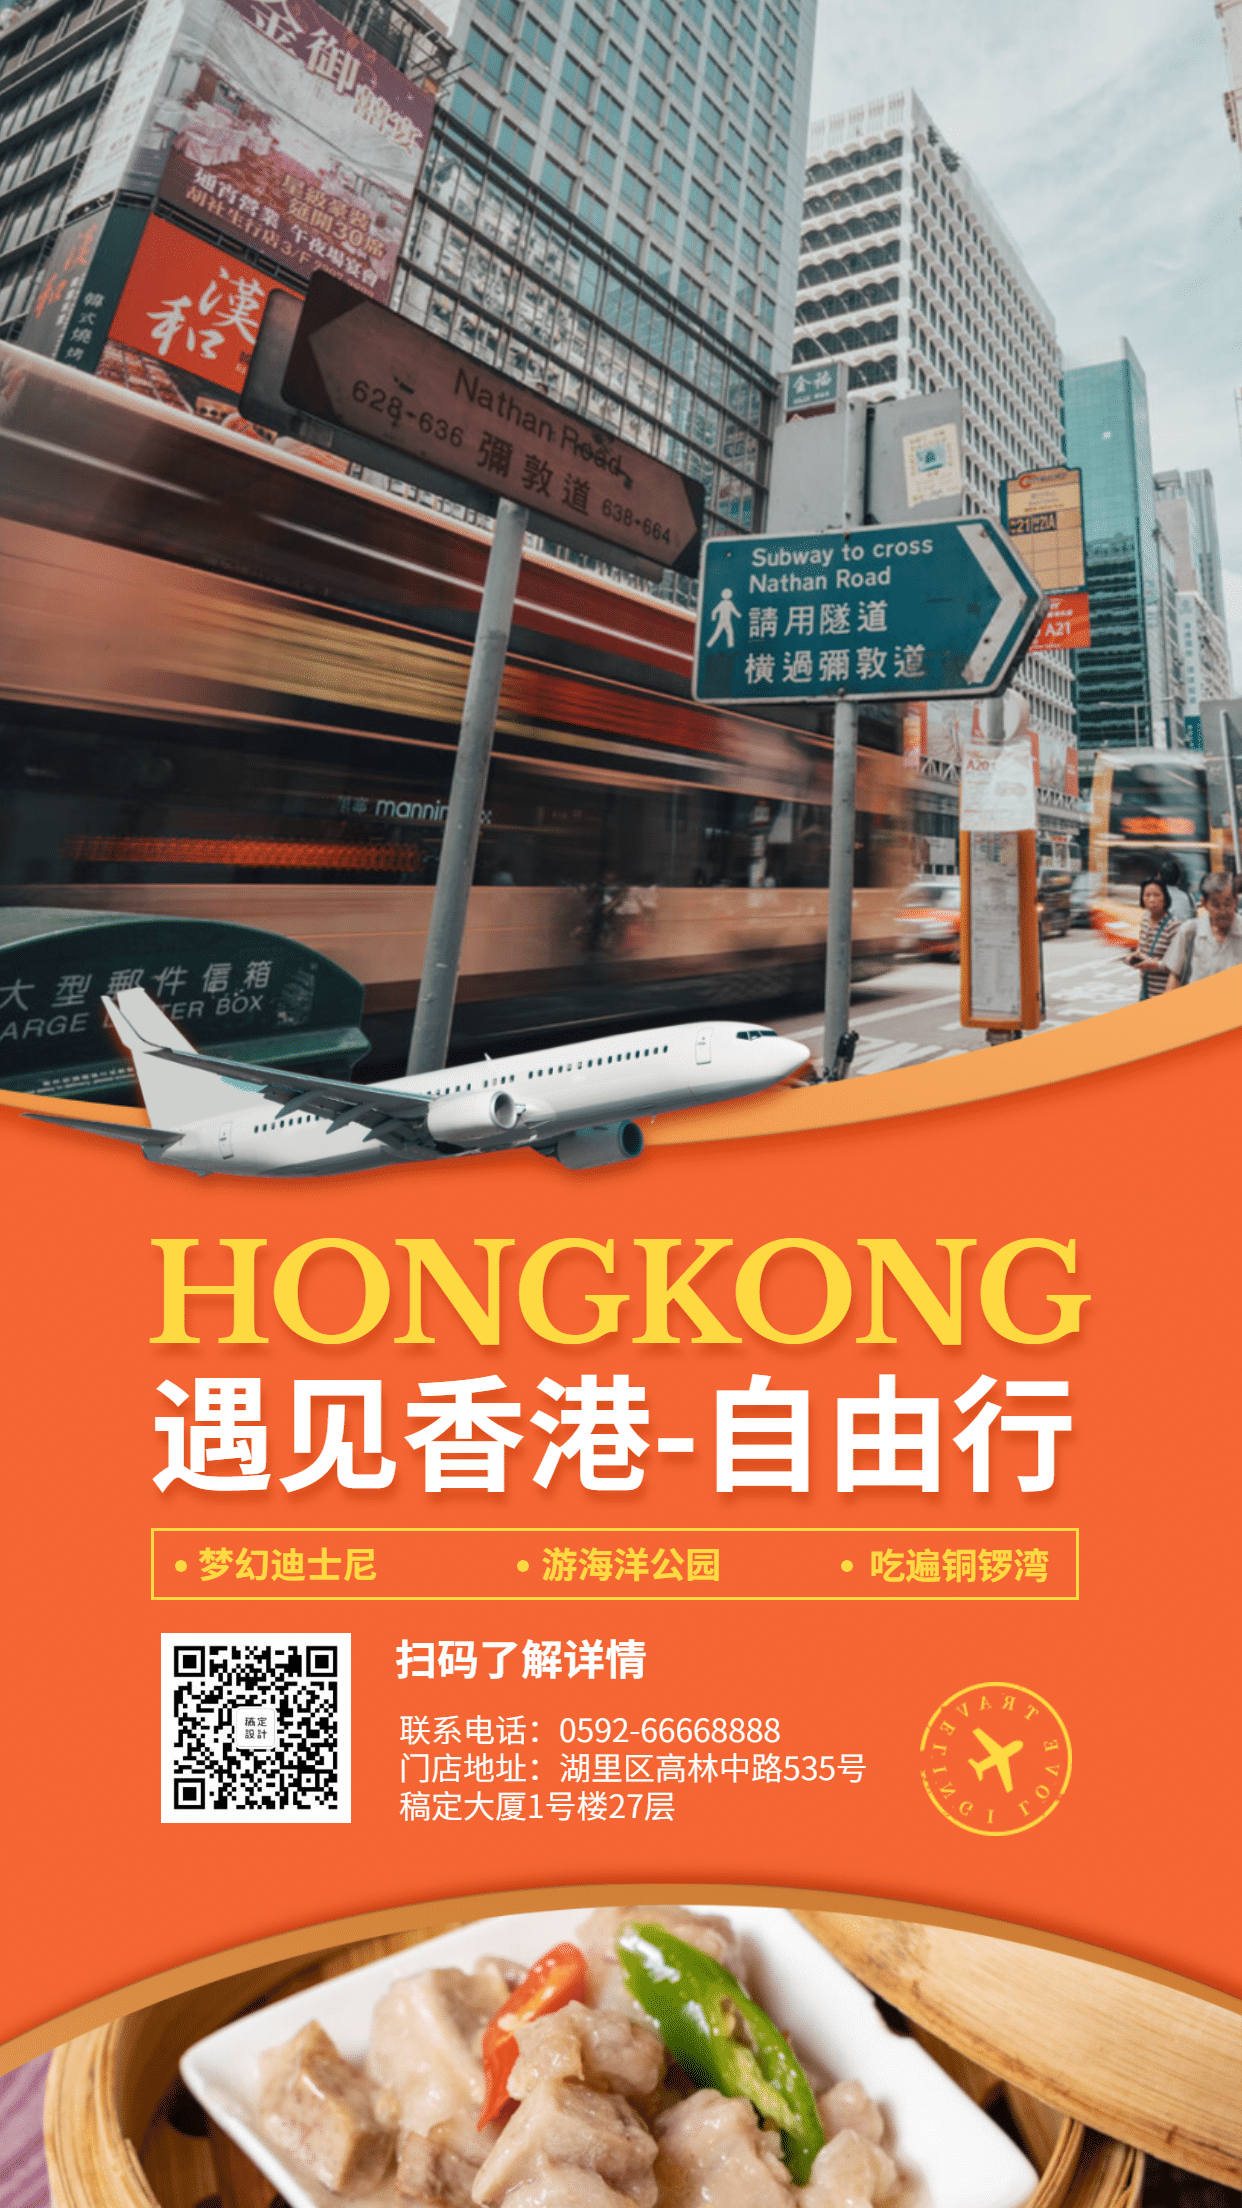 自由行香港旅游手机实景海报预览效果